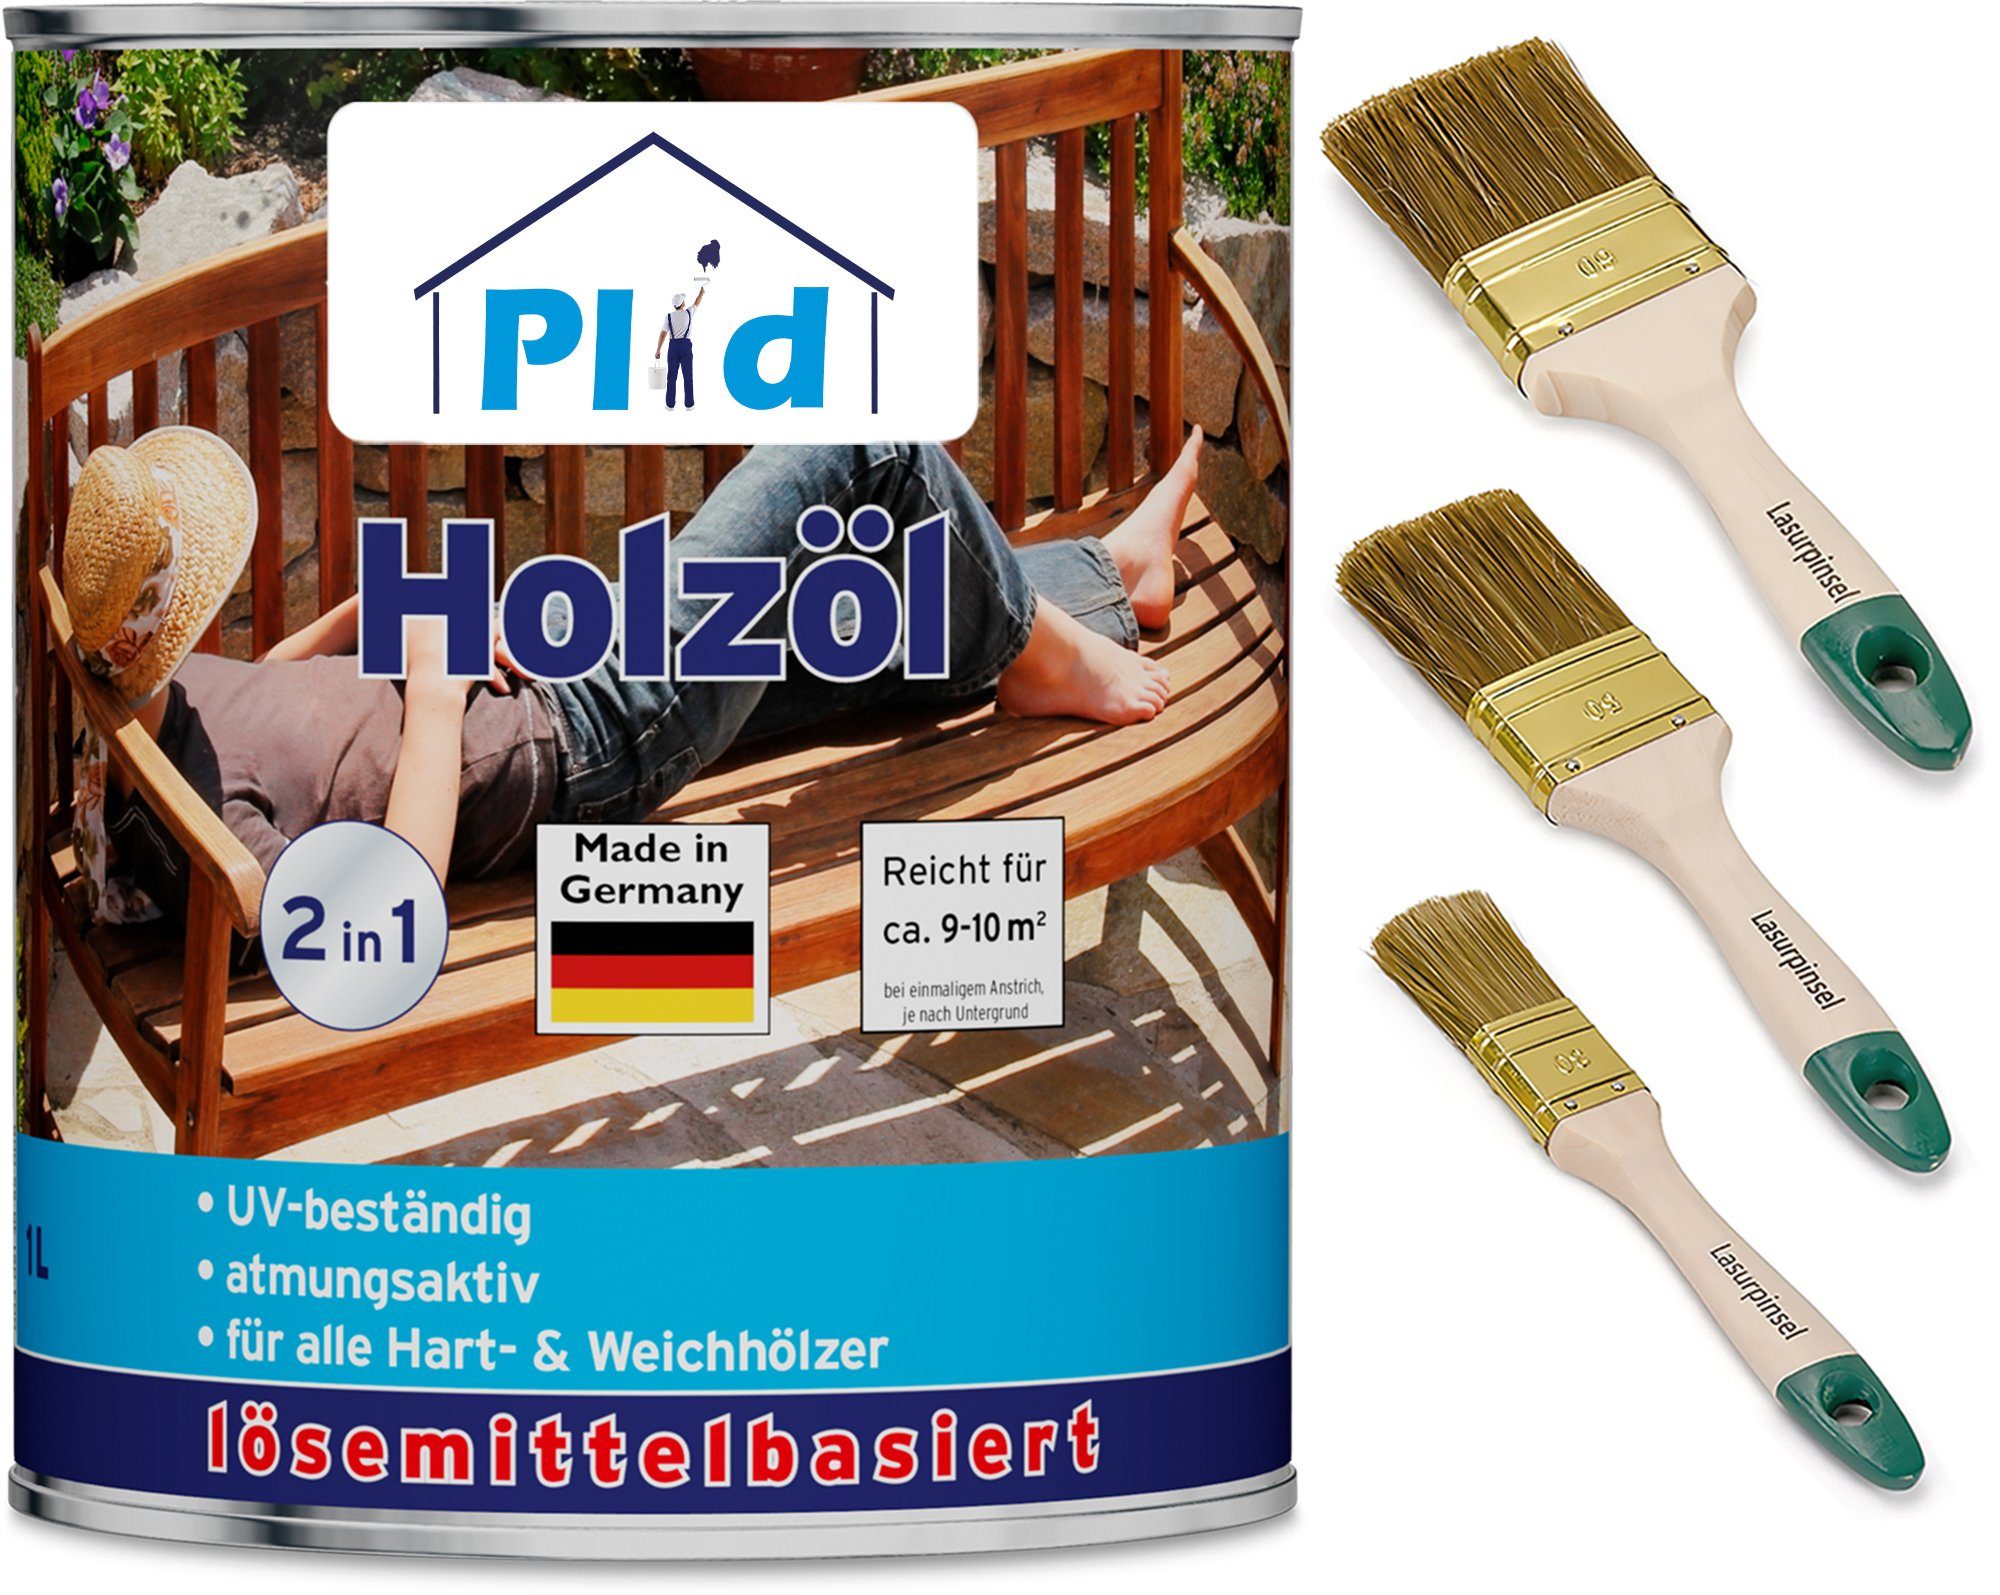 plid Holzöl Premium Holzöl Pflegeöl Pinsel Teak Holzschutz Imprägnieröl